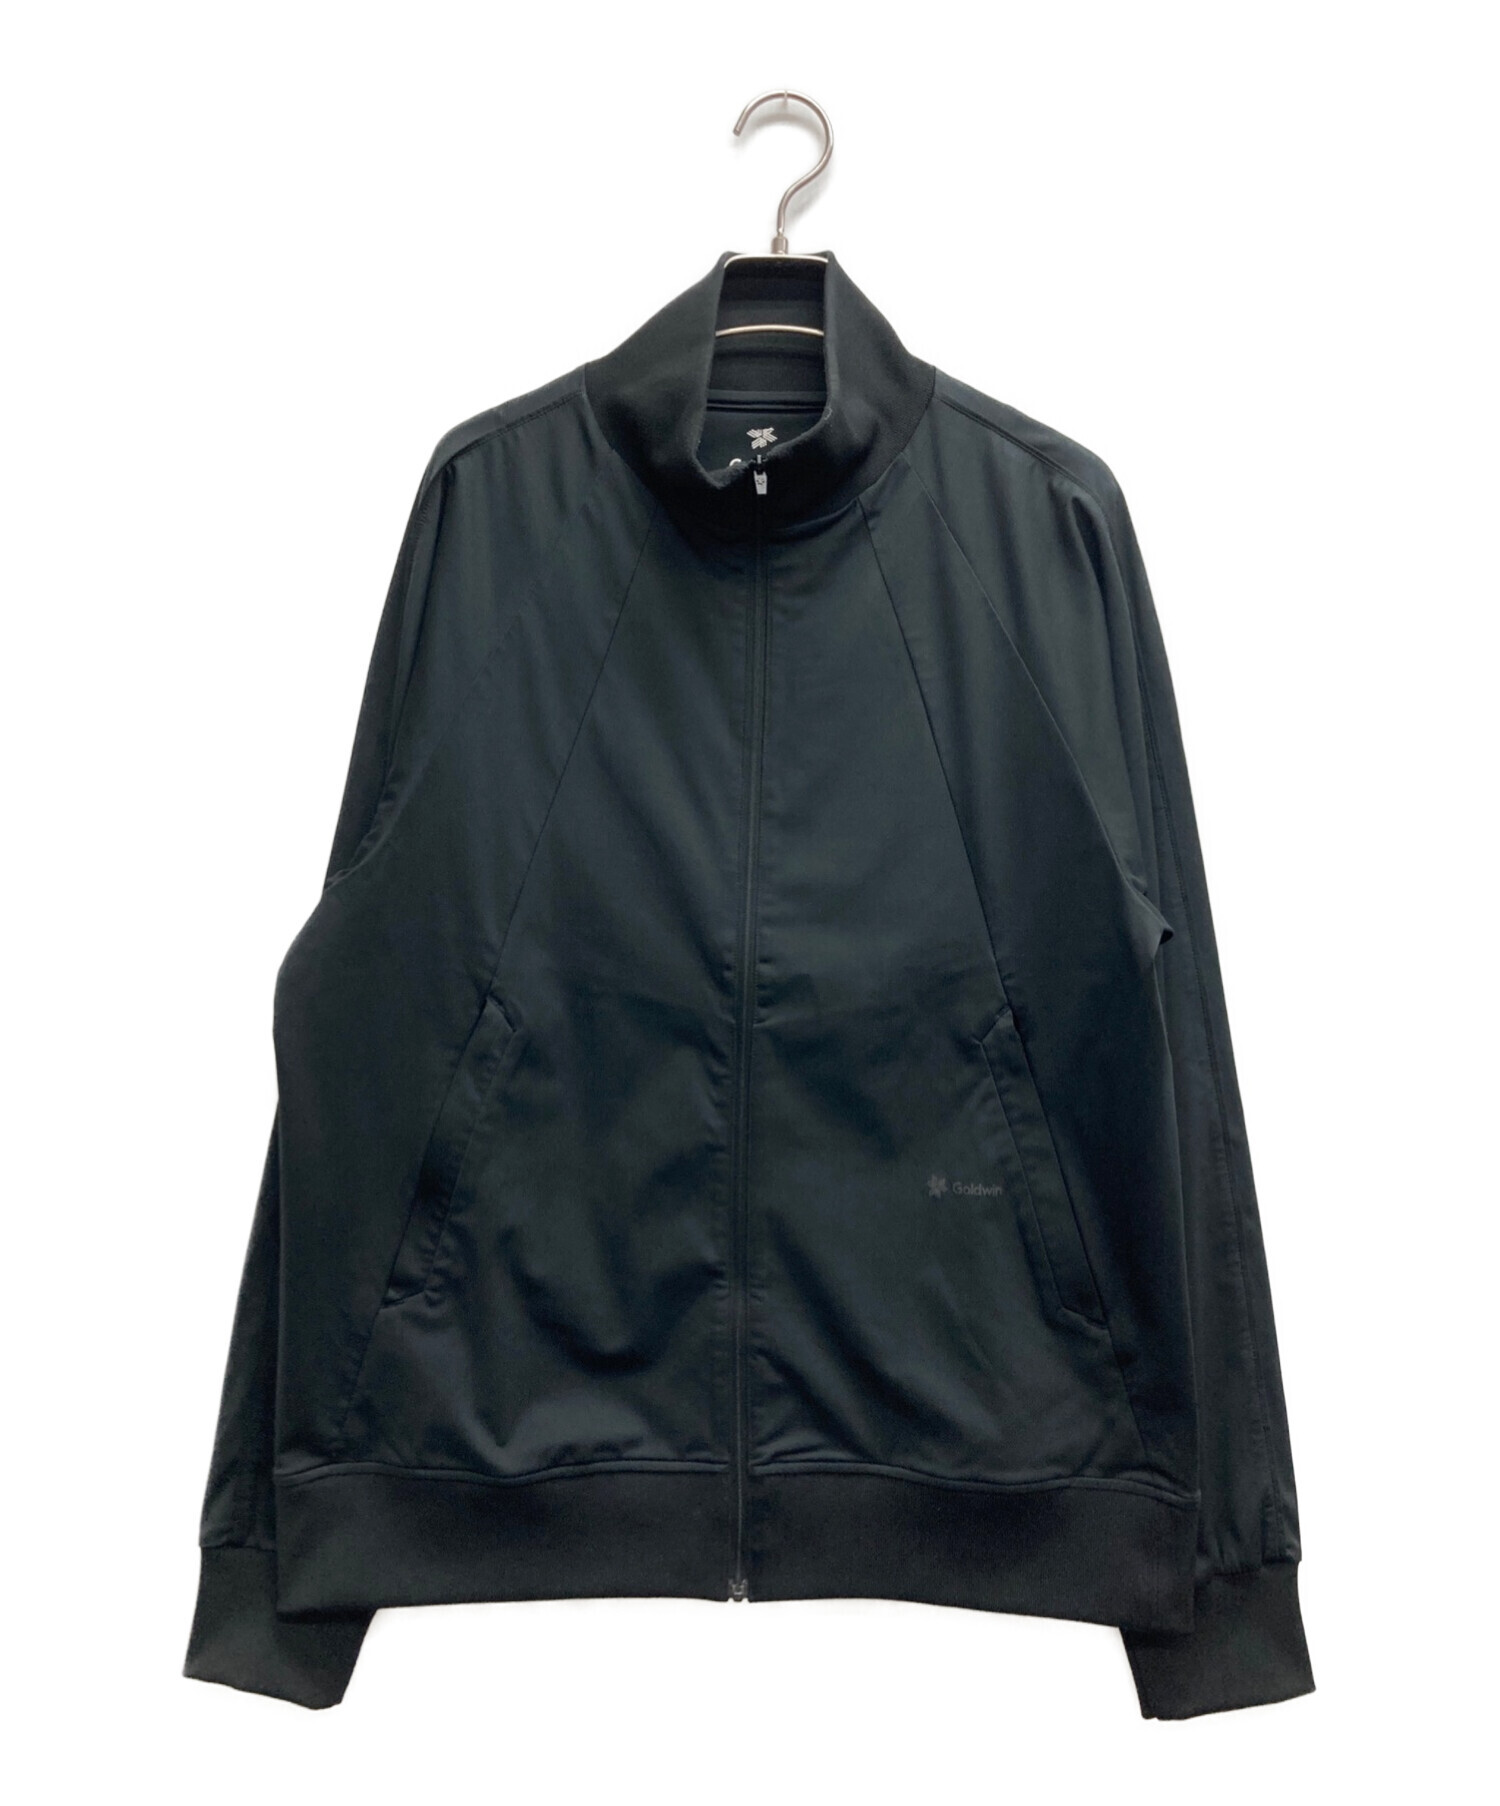 GOLDWIN (ゴールドウイン) シュプールトラックジャケット ブラック サイズ:M